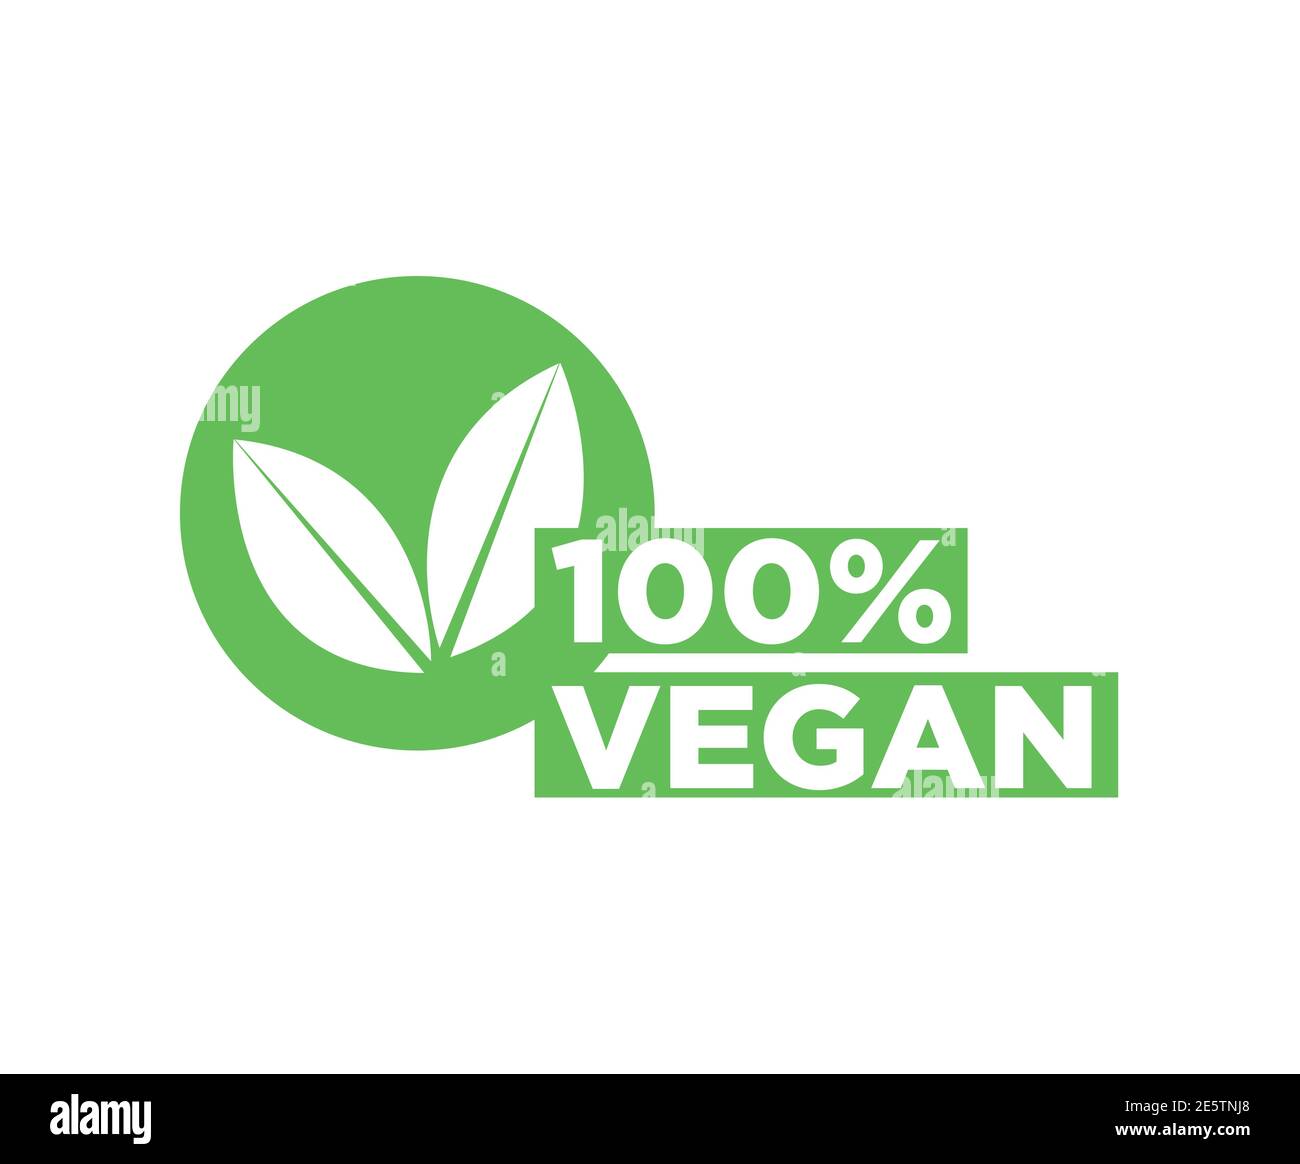 Vegan icon Stock Vector